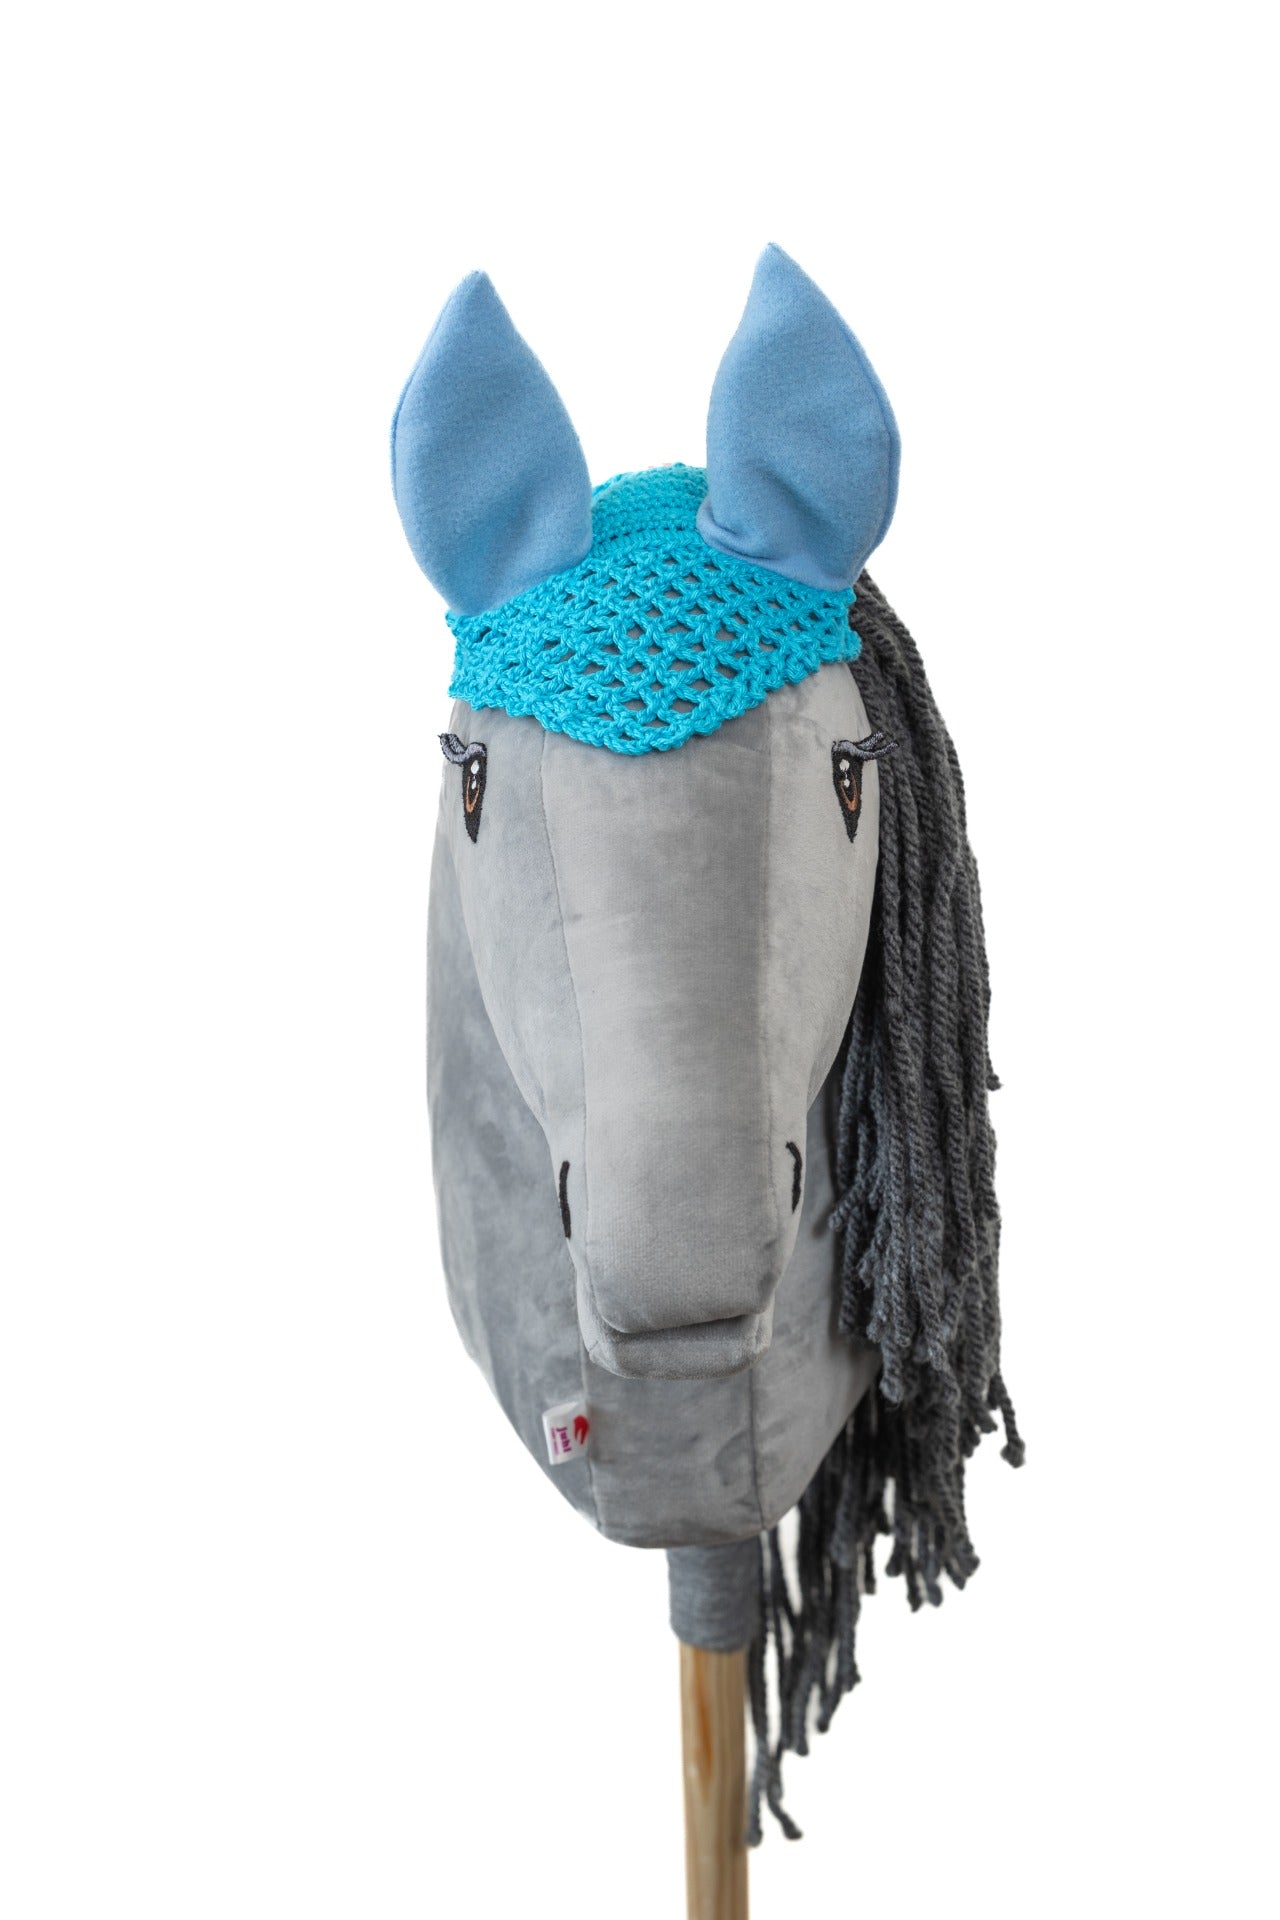 Čabraka háčkovaná - Tyrkysová s modrýma ušima - Dospělý kůň